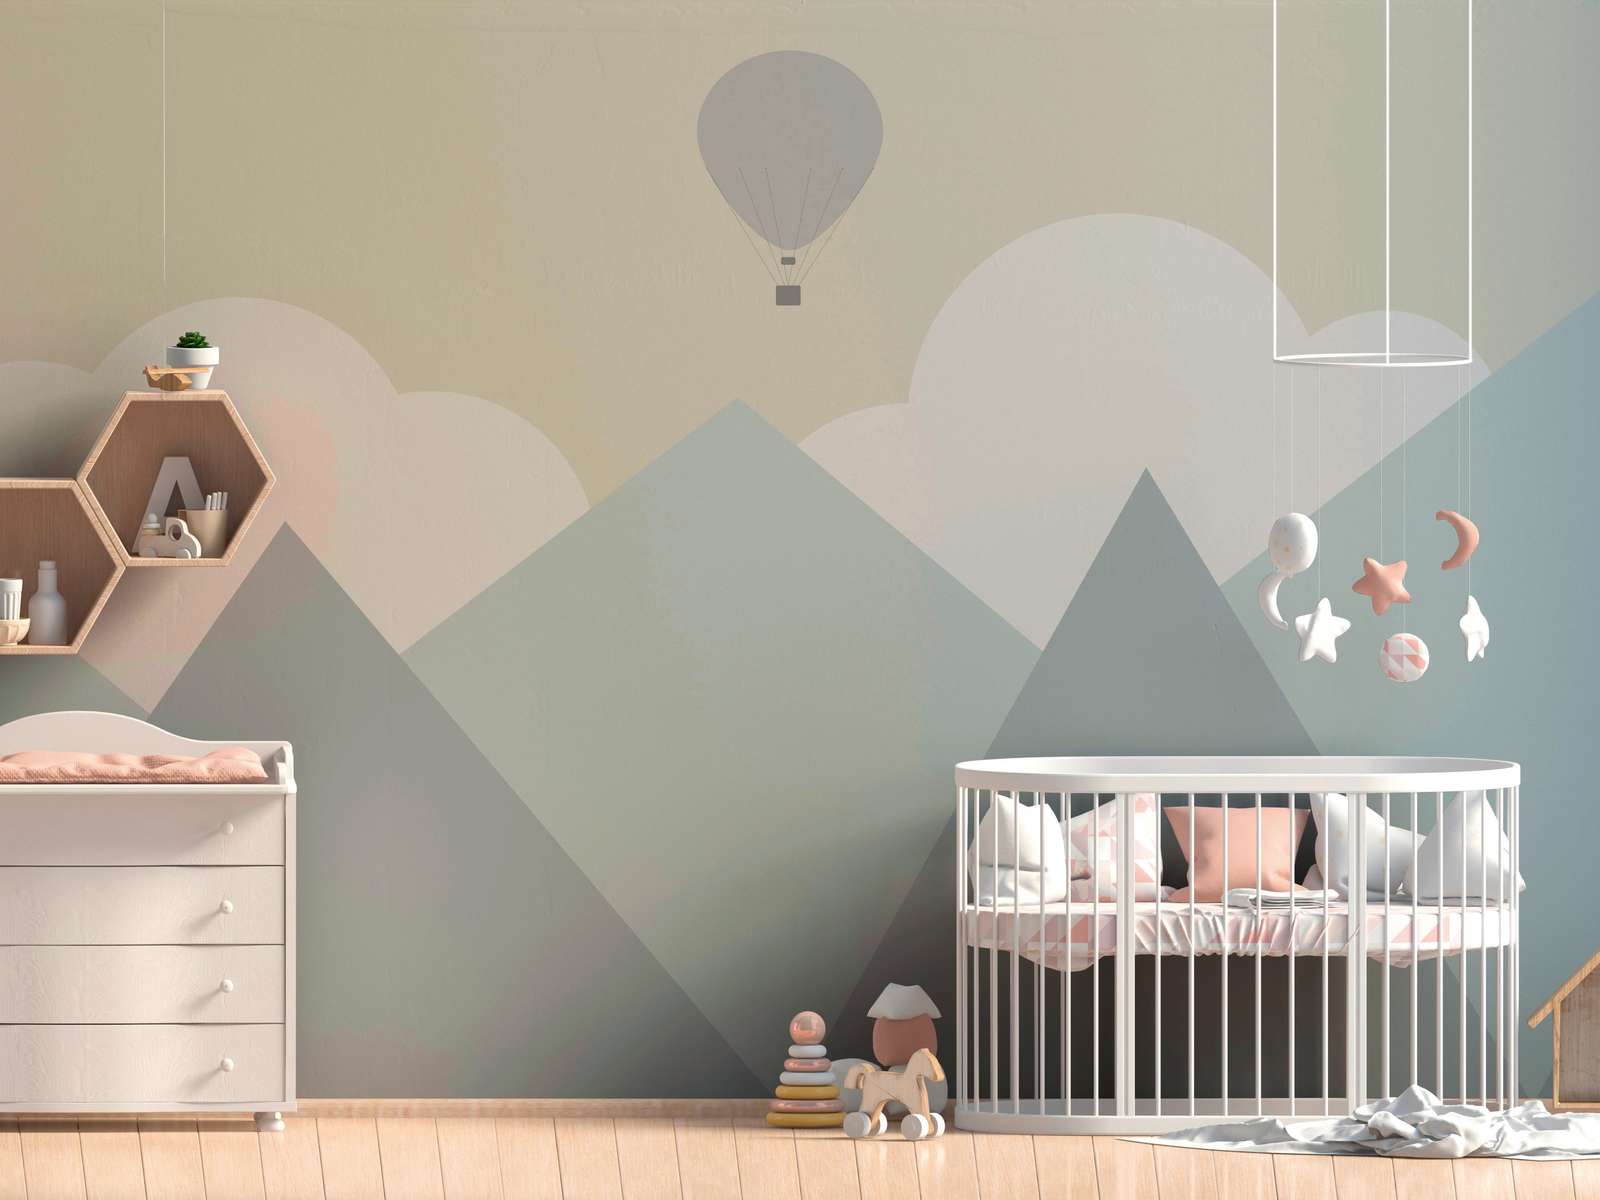             Papel pintado de habitación infantil Montañas con nubes y globos aerostáticos - Amarillo, Verde, Gris
        